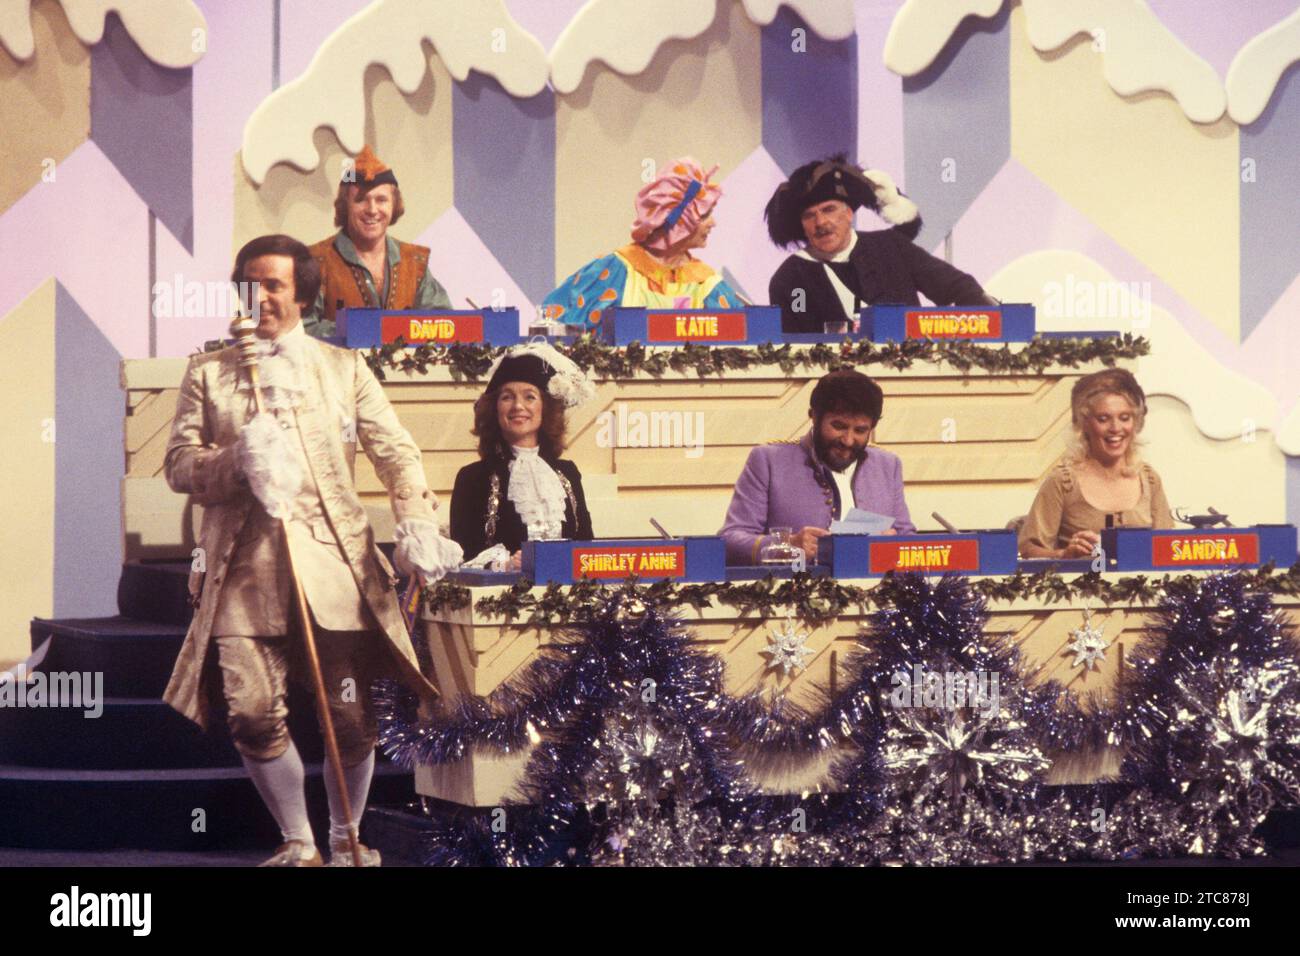 Photo de dossier datée du 01/11/80 de l'édition de Noël de Blankety Blank. L'animateur Terry Wogan avec des invités (de gauche à droite) David Hamilton, Katie Boyle et Windsor Davies, (de gauche à droite) Shirley Anne Field, Jimmy Tarbuck et Sandra Dickinson, pendant l'offre spéciale de Noël Blankety Blank. L'actrice Shirley Anne Field, qui a joué dans The Entertainer et Alfie, est décédée à l'âge de 87 ans, a déclaré sa famille dans un communiqué. Date d'émission : lundi 11 décembre 2023. Banque D'Images